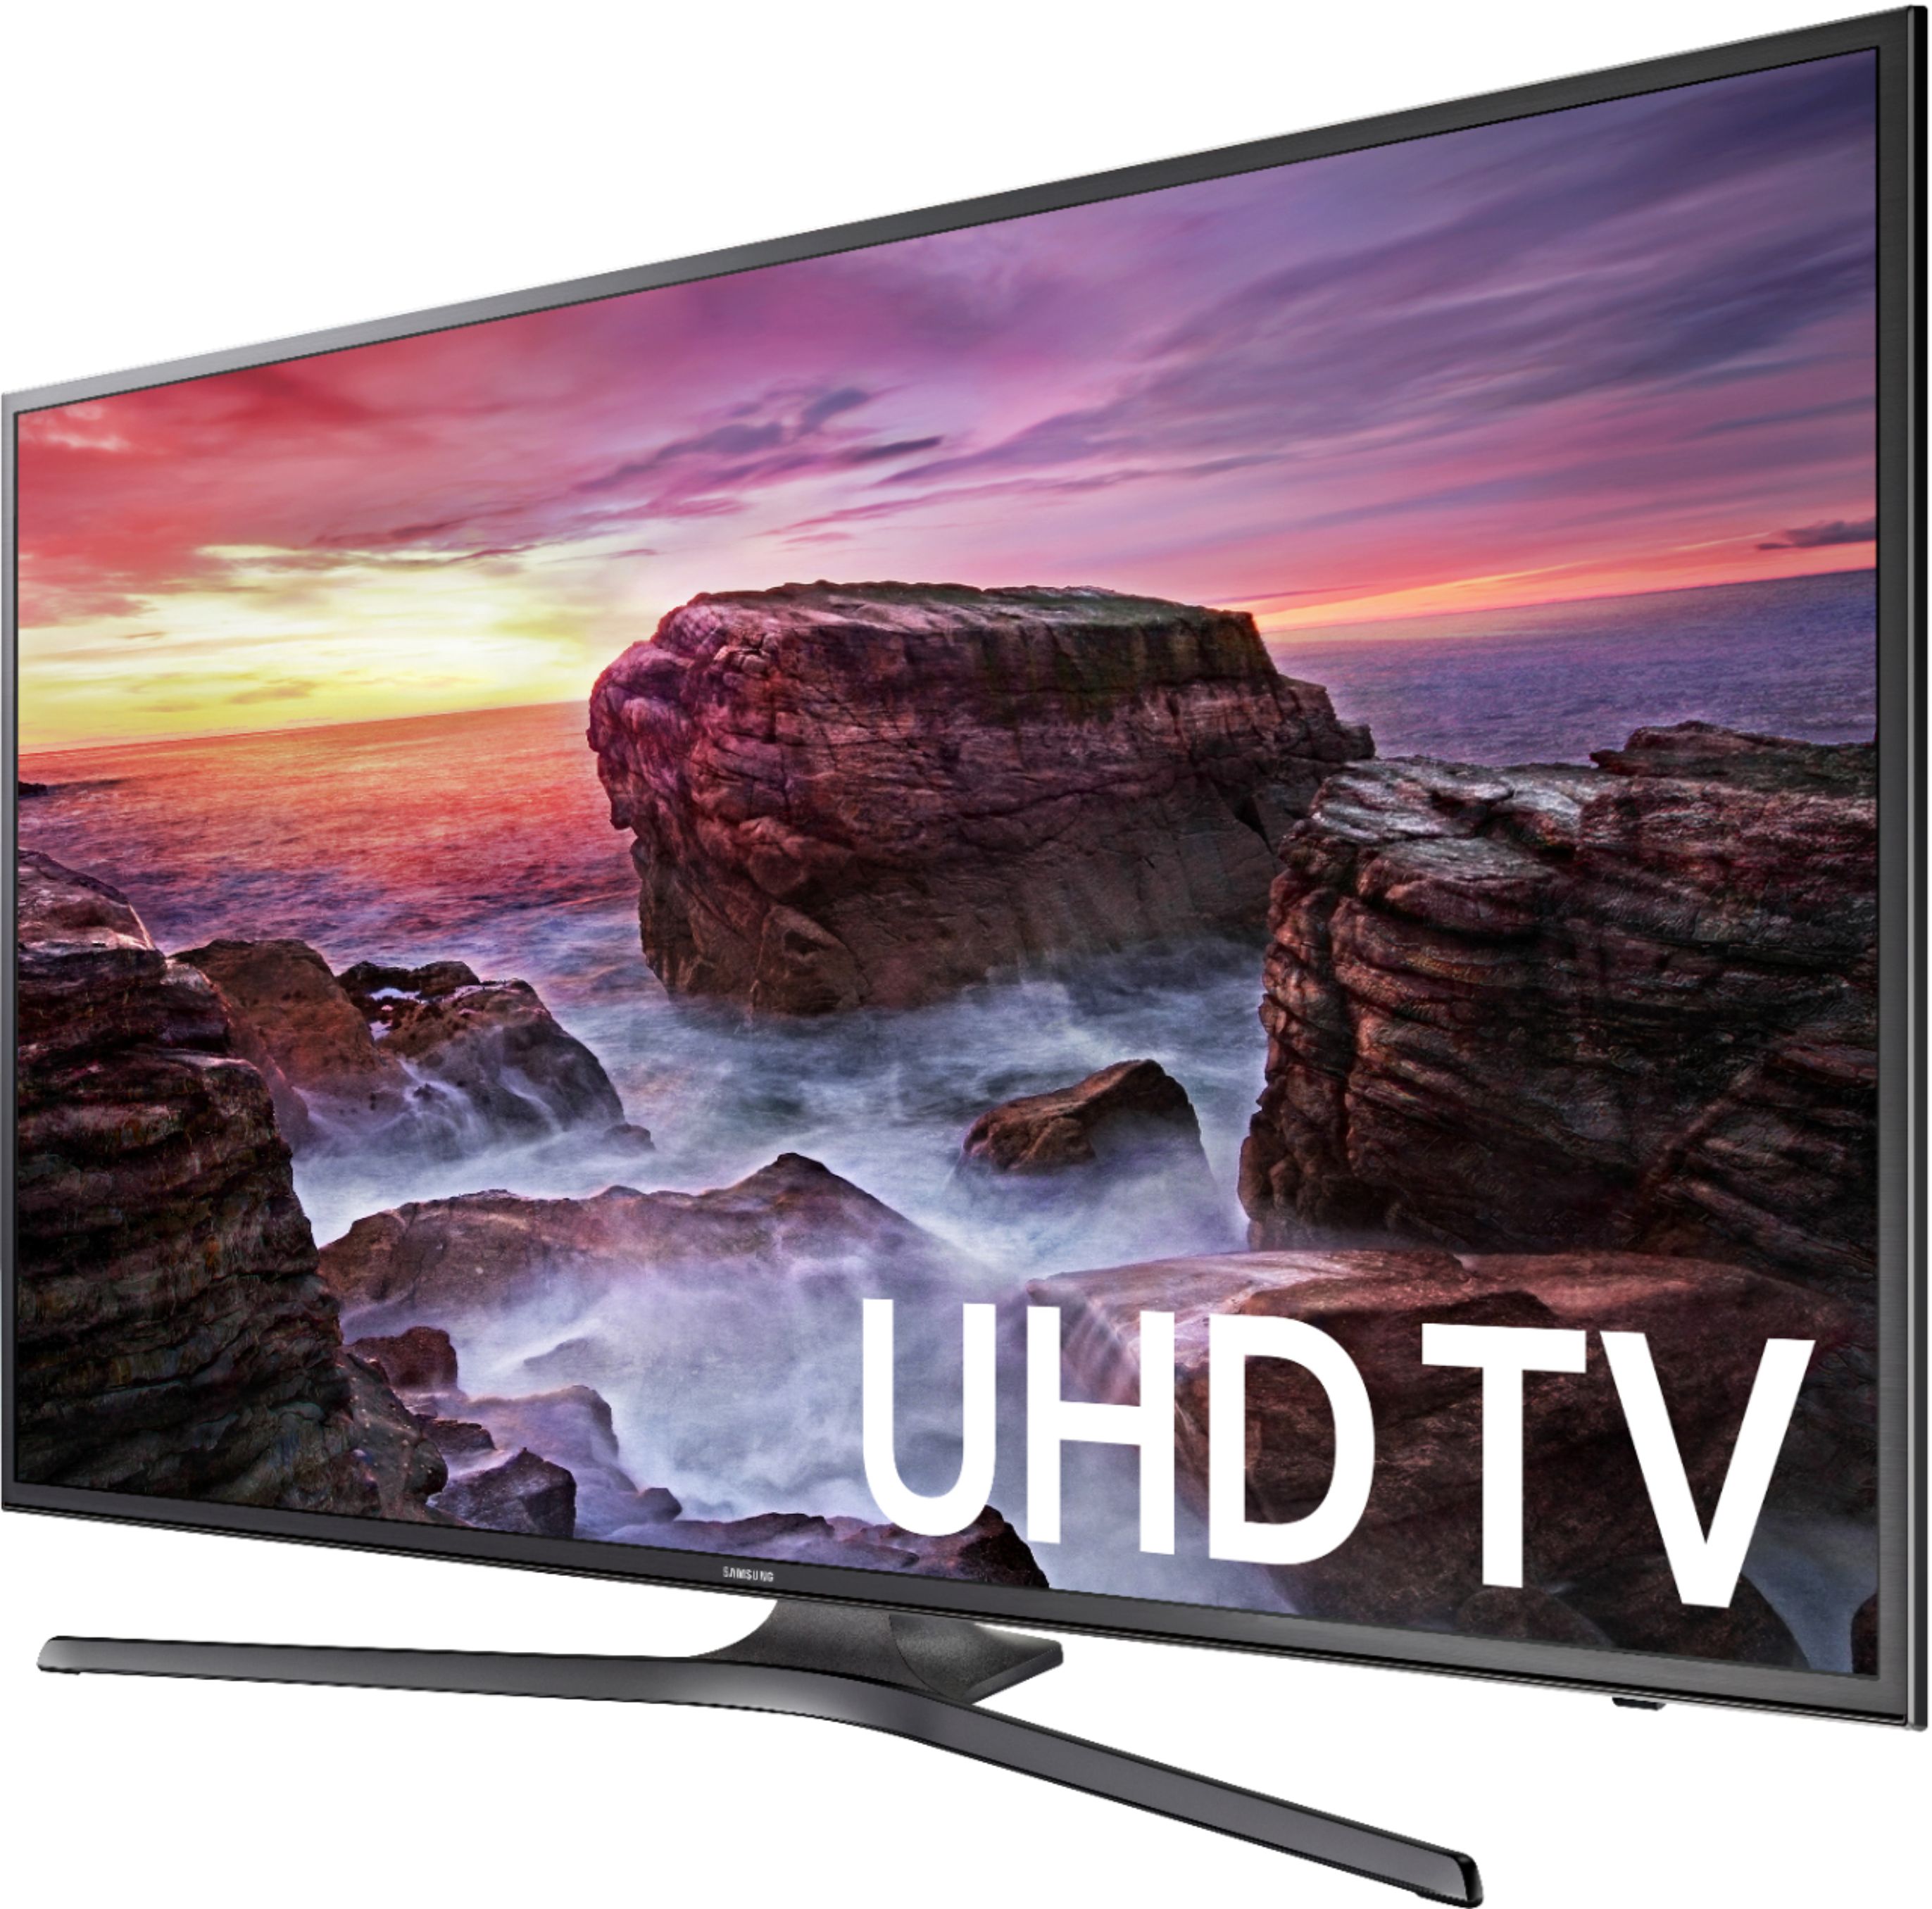 TV Samsung LED UHD 4K Smart 50 UN50AU7090